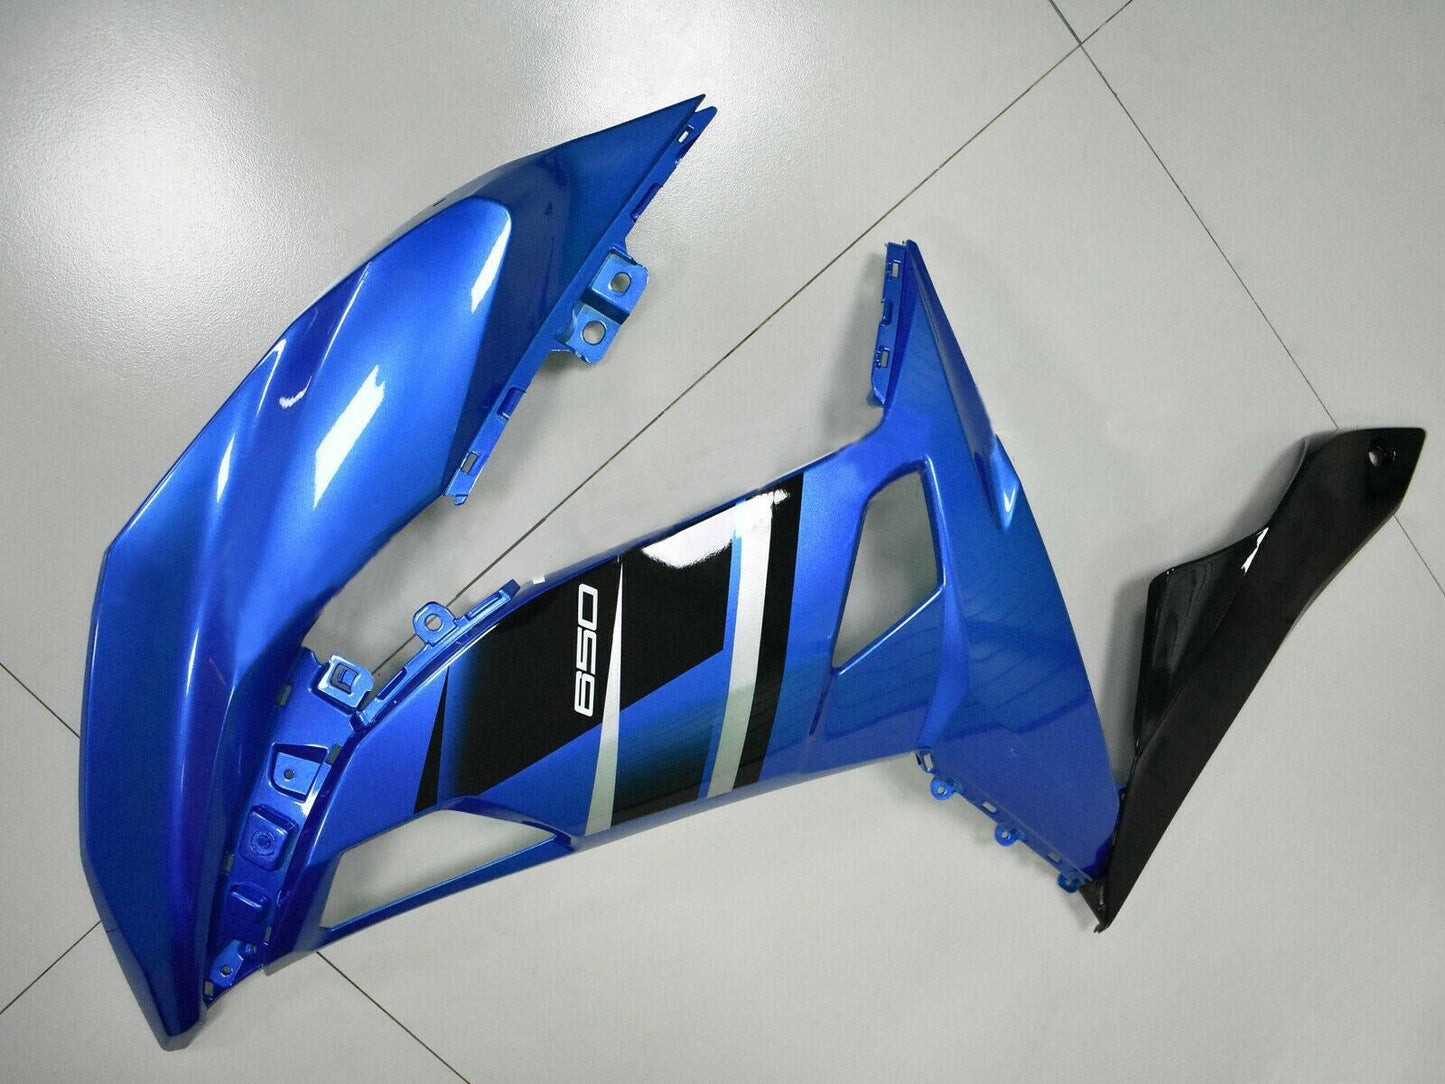 2017-2019 Kawasaki Ninja 650 EX650 Amotopart Fairing Blue Injection Plastic Kit